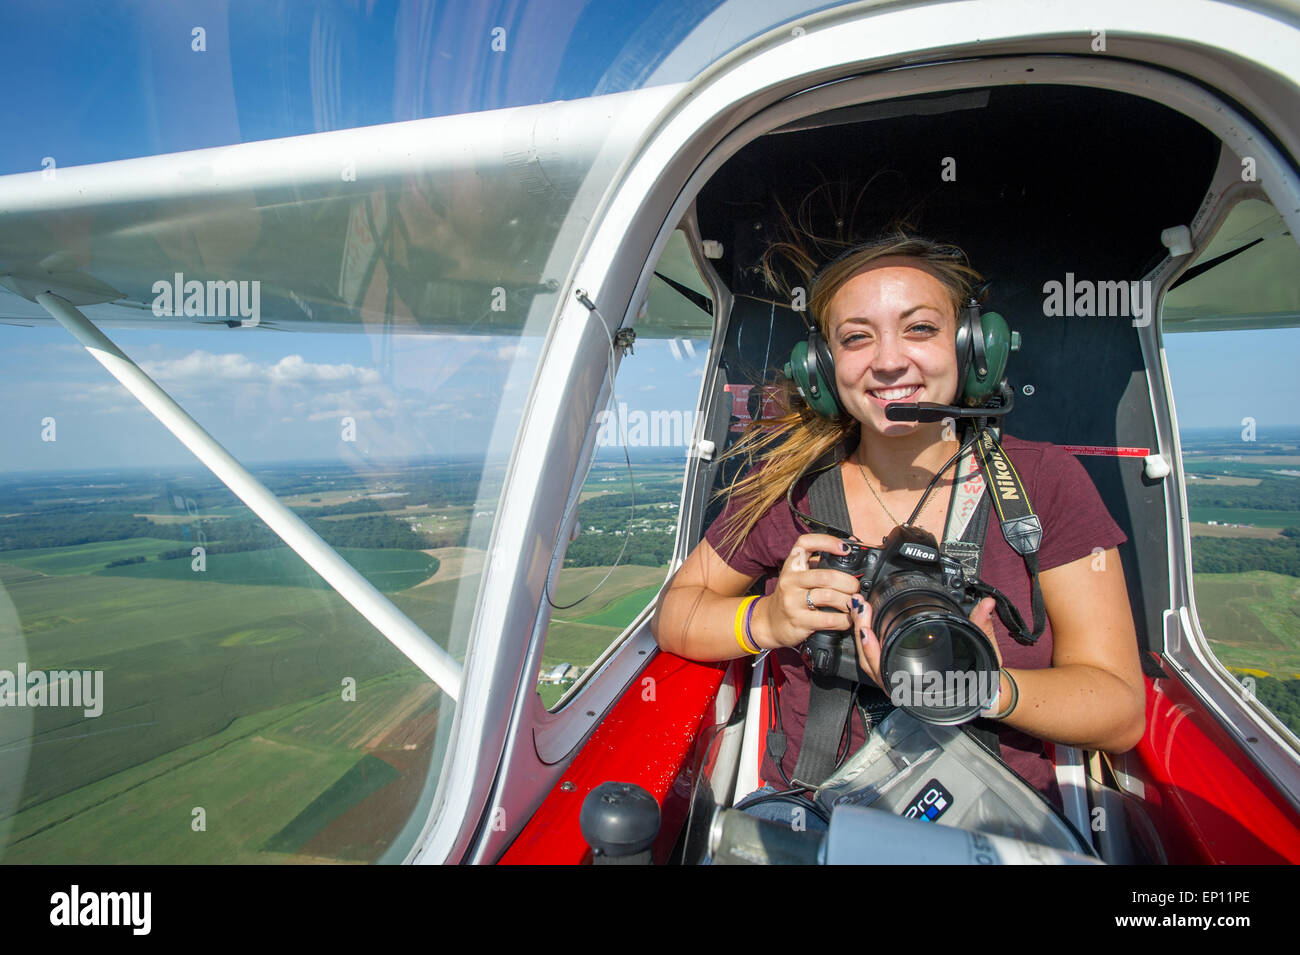 Lächelnd Fotografin Holding Kamera im kleinen Flugzeug, während die Luft in Ridgley, Maryland, USA Stockfoto